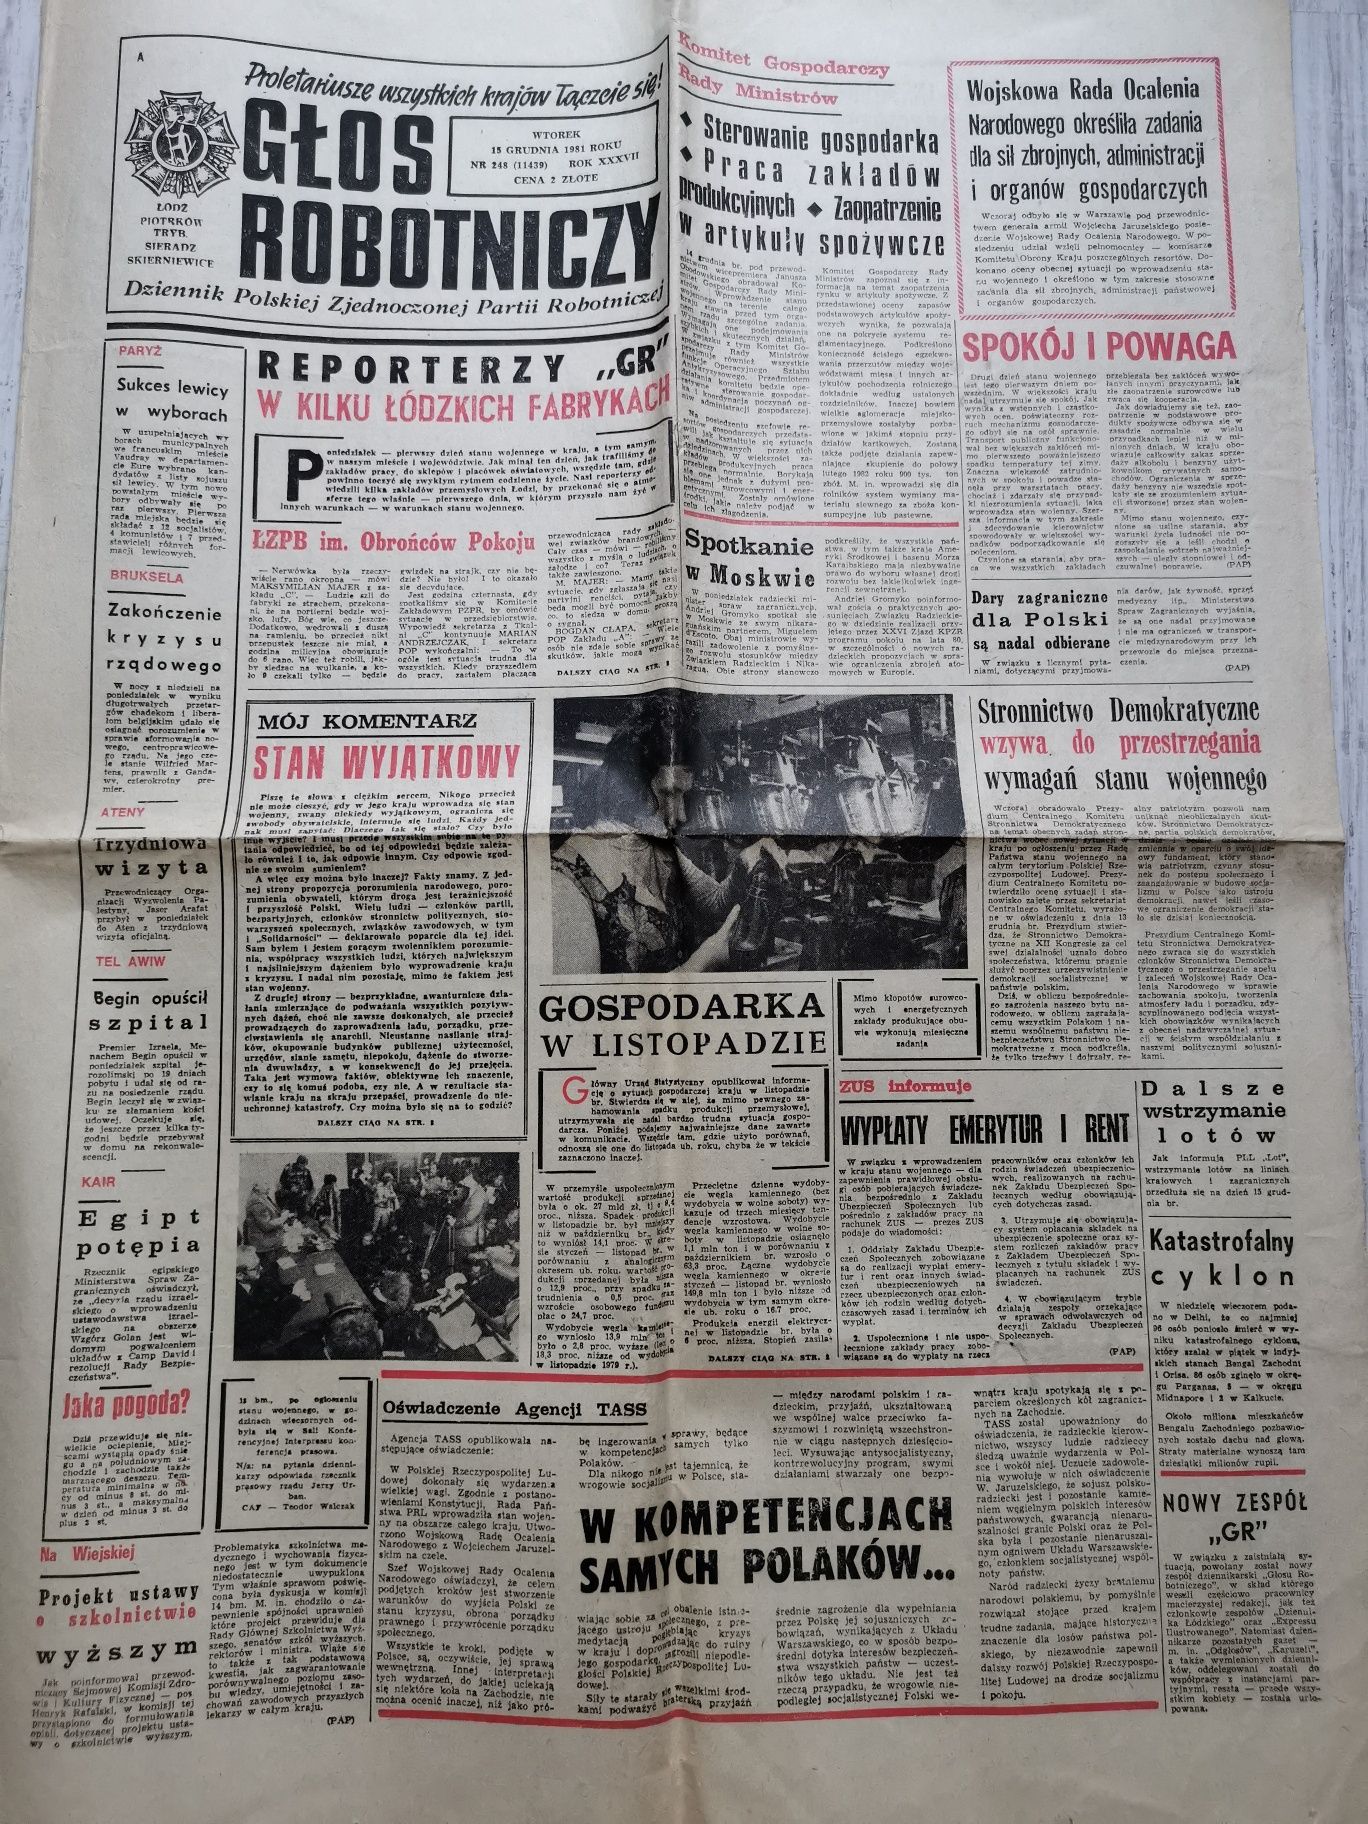 Głos robotniczy z 15 grudnia 1981 stare gazety prl